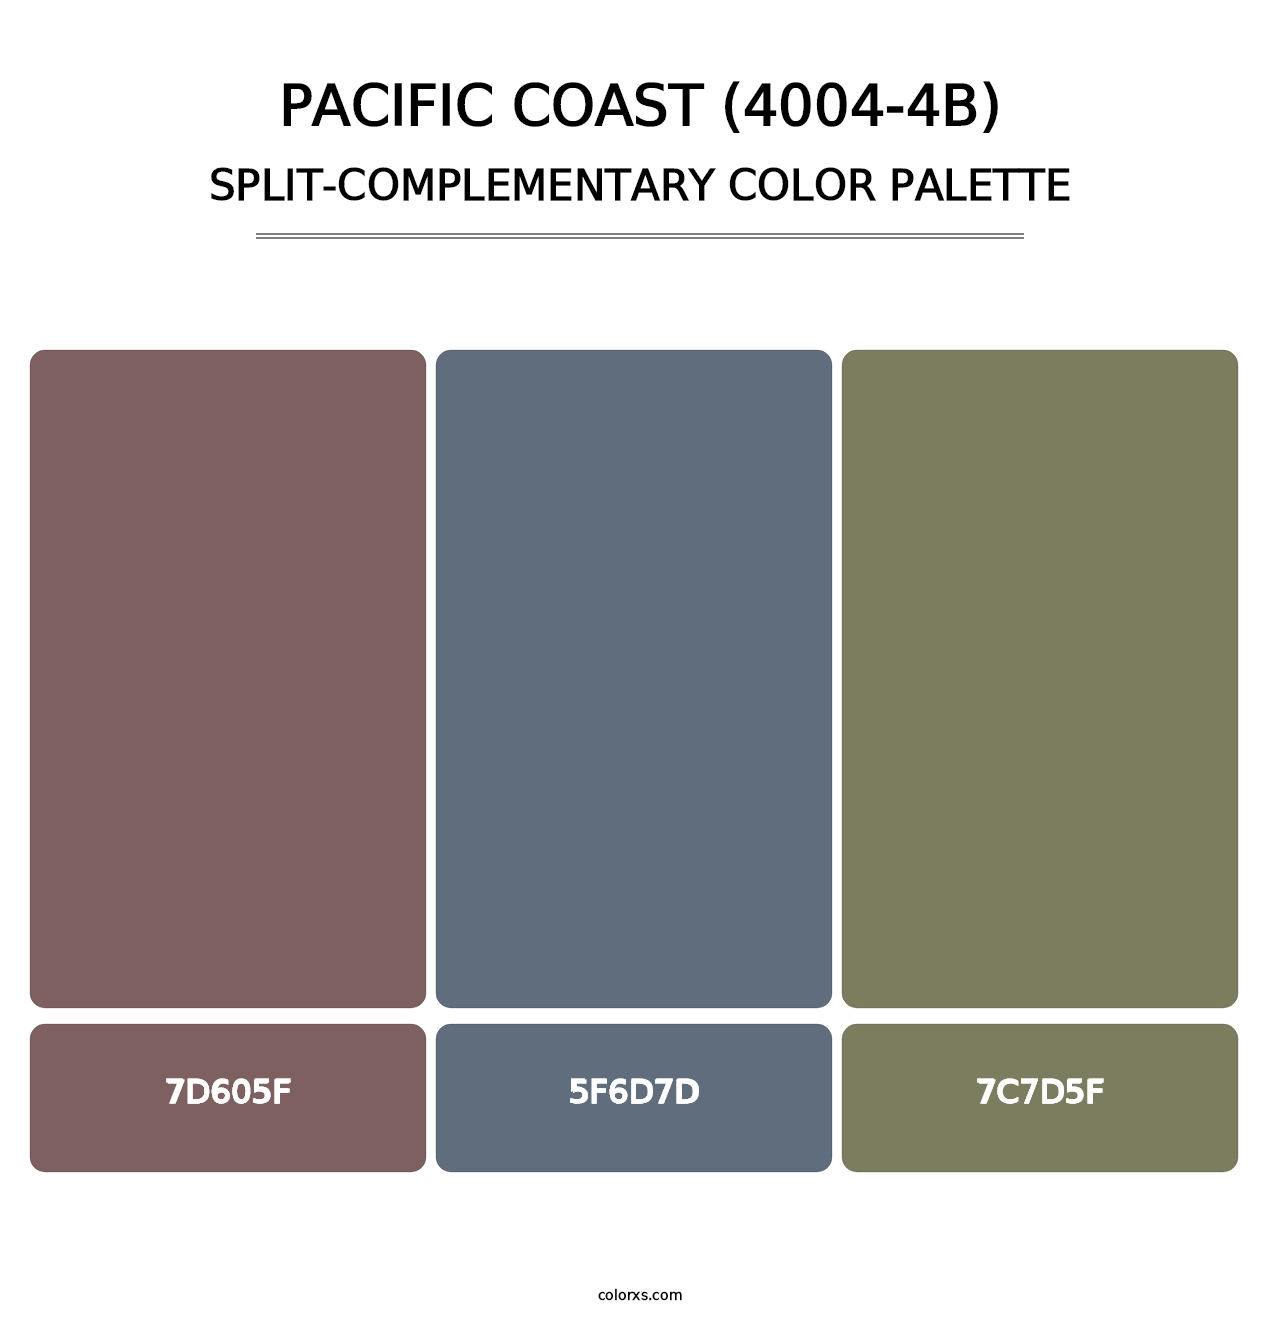 Pacific Coast (4004-4B) - Split-Complementary Color Palette